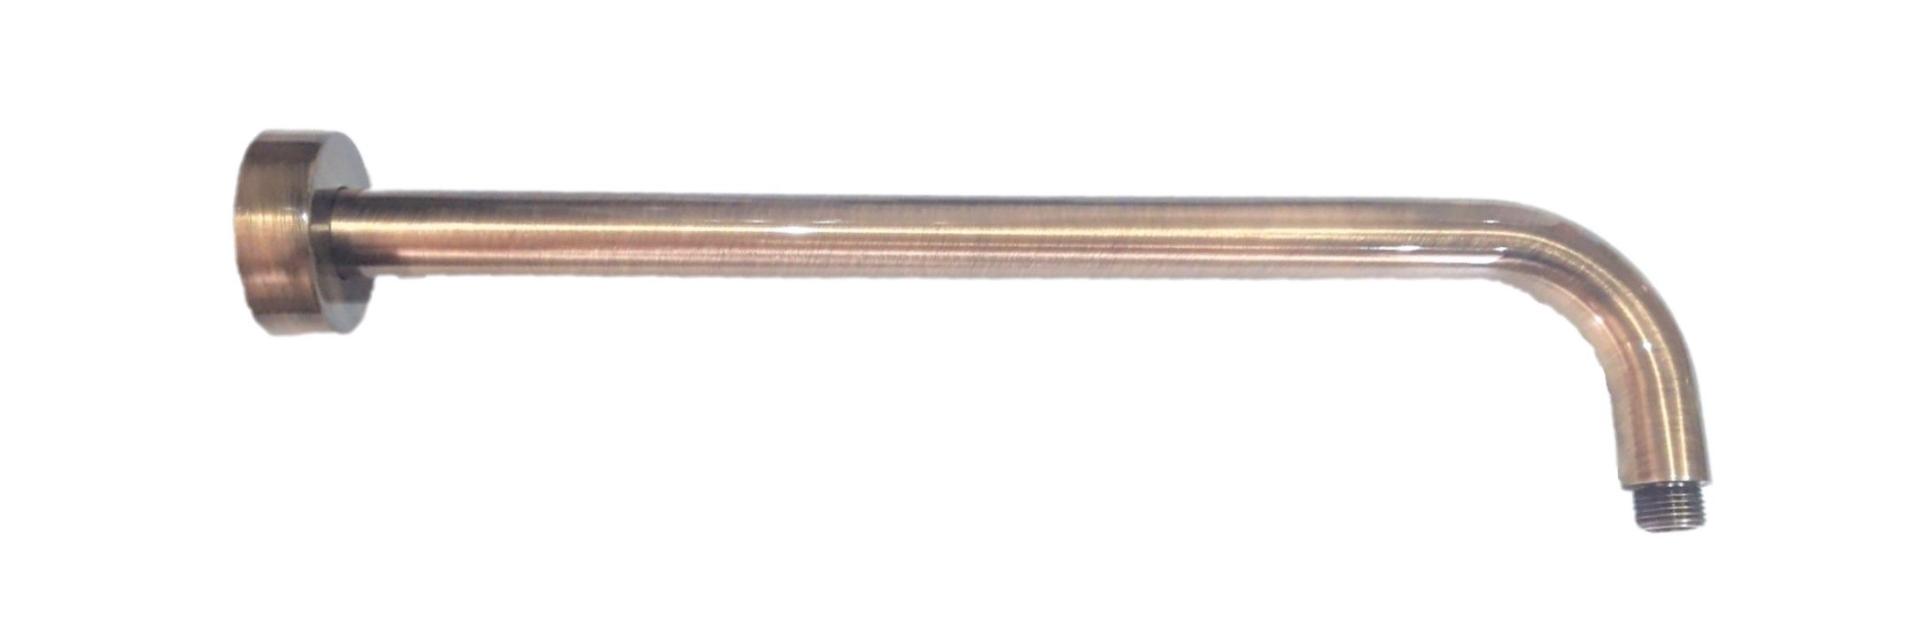 IB Rubinetterie Braccio cm 40 a sezione tonda per soffione doccia Bronzo Antico codice RC418BB